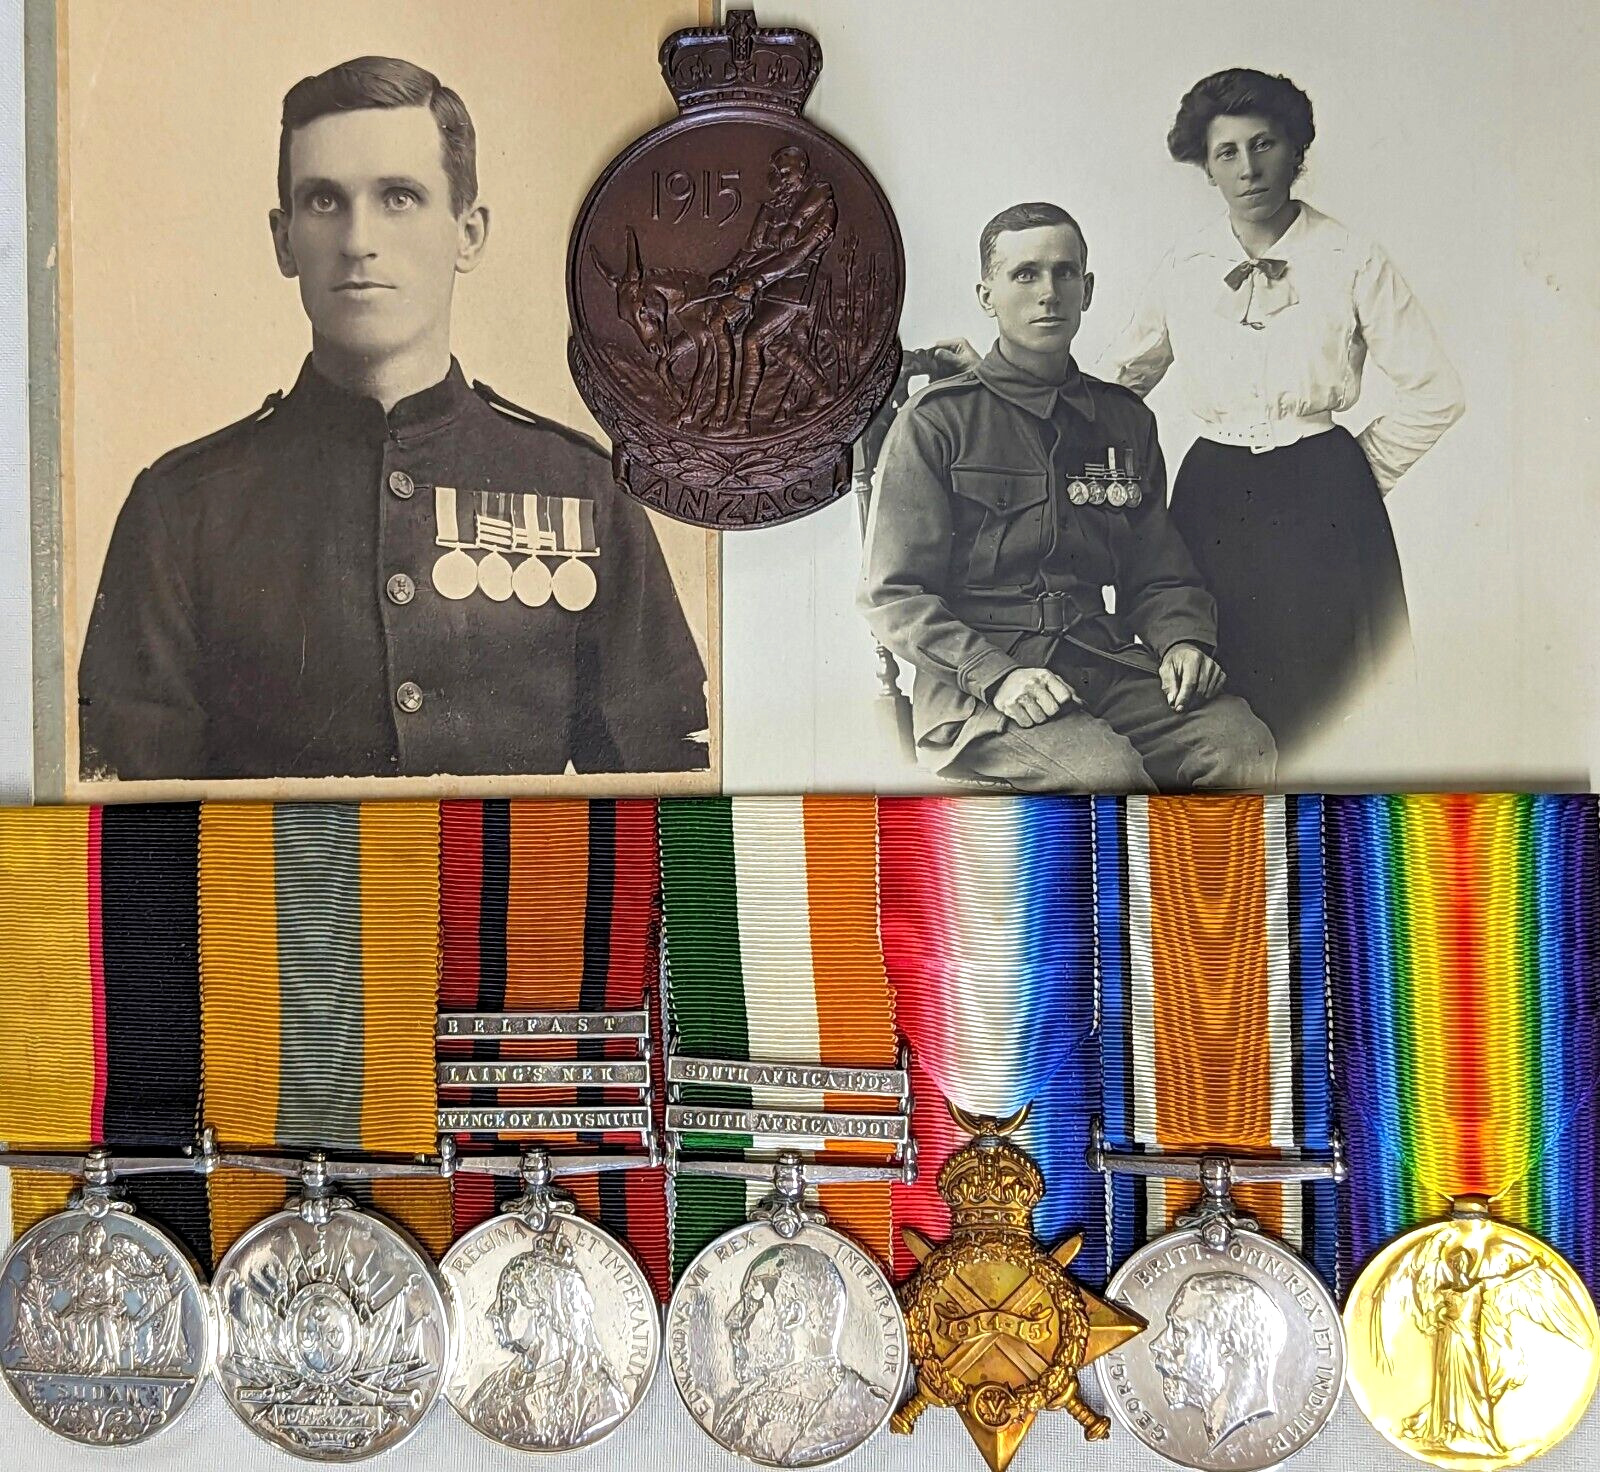 Rare unique WW1 Australian 28th Battalion medals badges documents uniform button